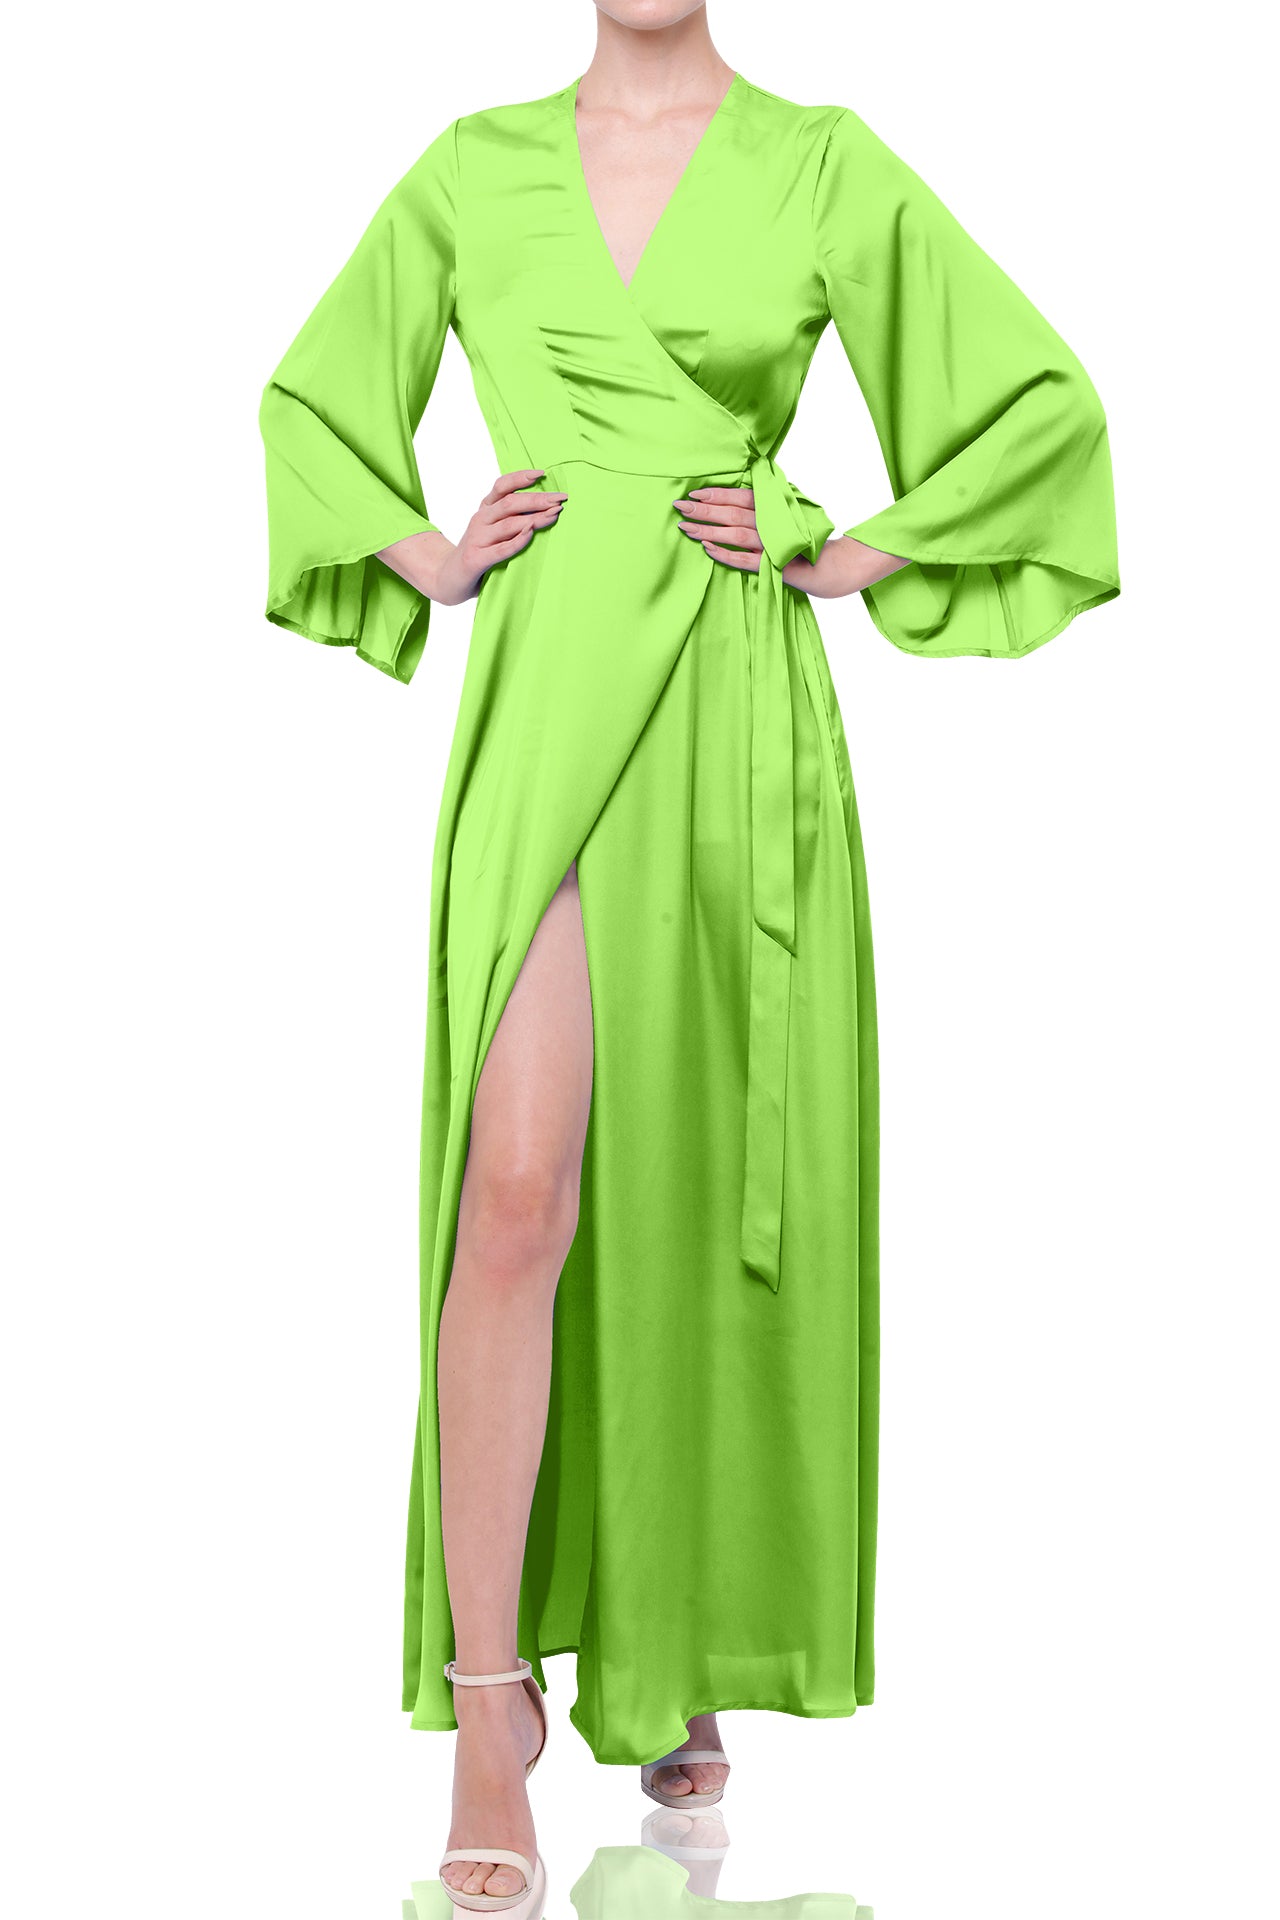 Sharp Green Designer Full Sleeve Long Maxi Dress